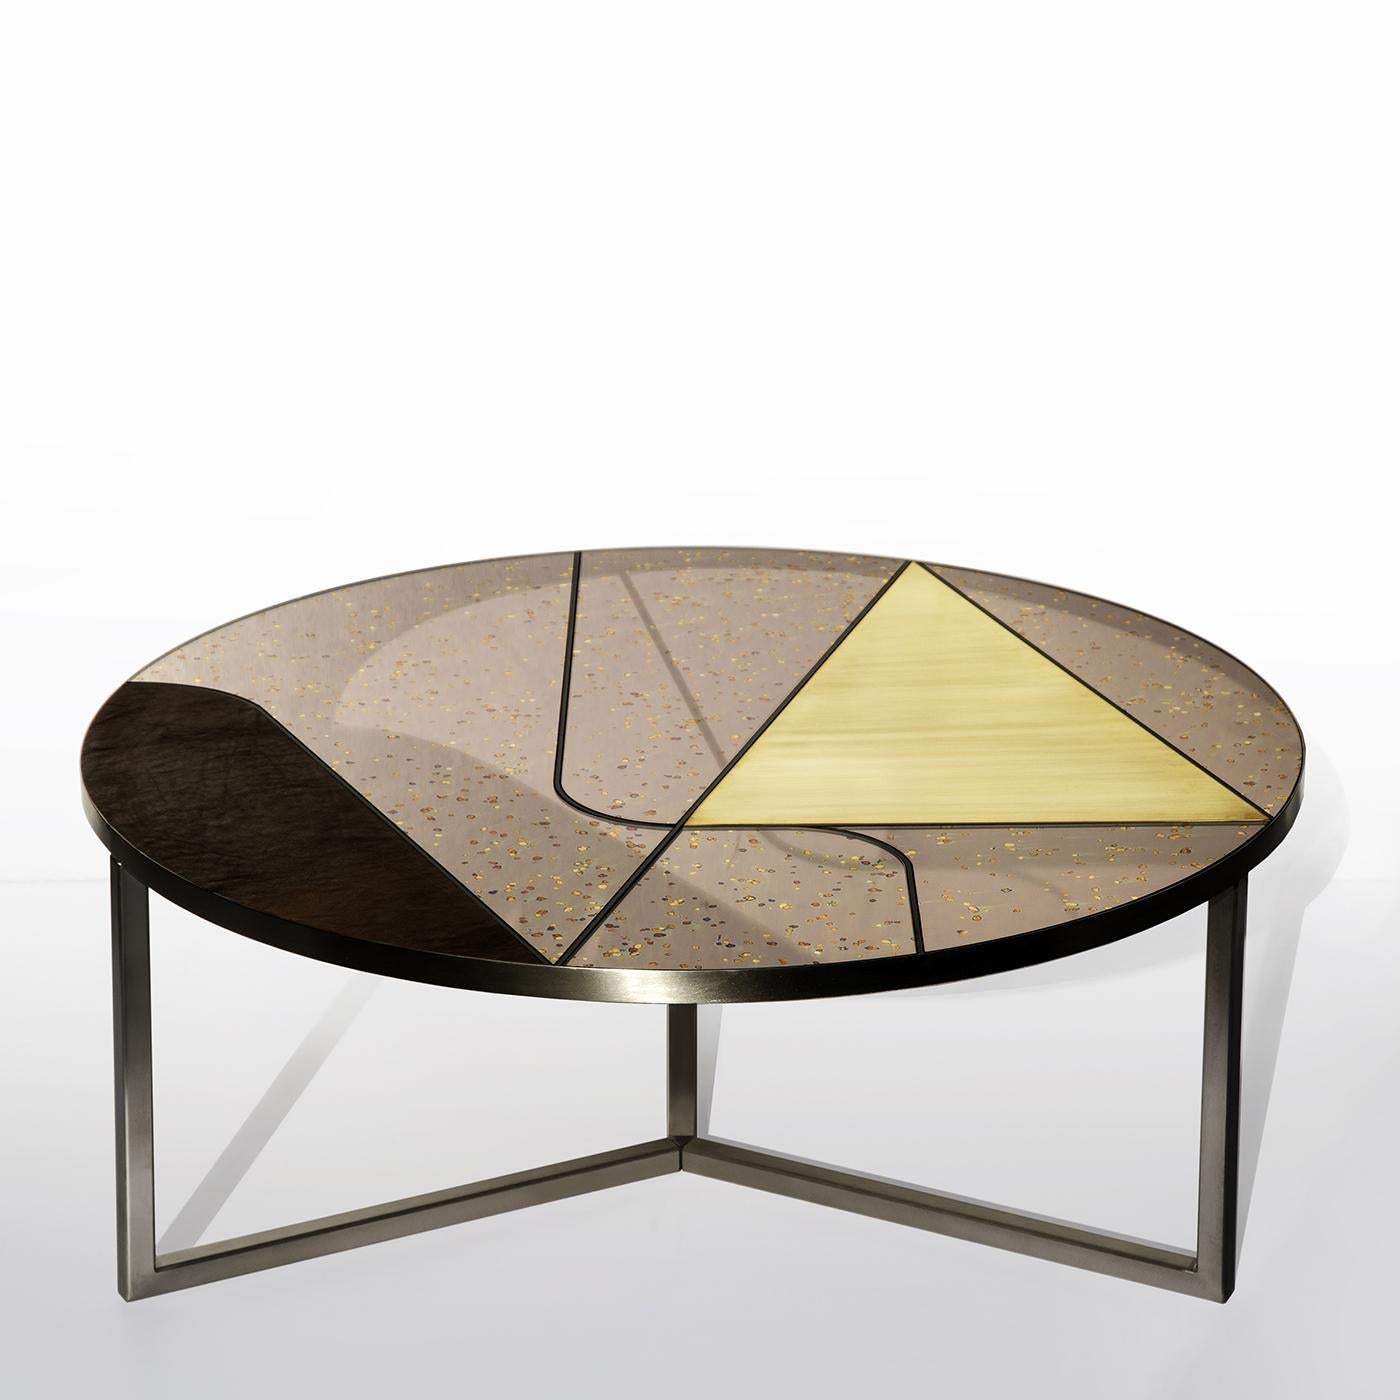 Faisant partie de la collection Itinera, la table basse Poudre d'étoile est inspirée par le plaisir incontesté du voyage. Réalisée dans le cadre d'une rencontre créative avec la verrerie des miroirs anciens, la table est fabriquée en acier